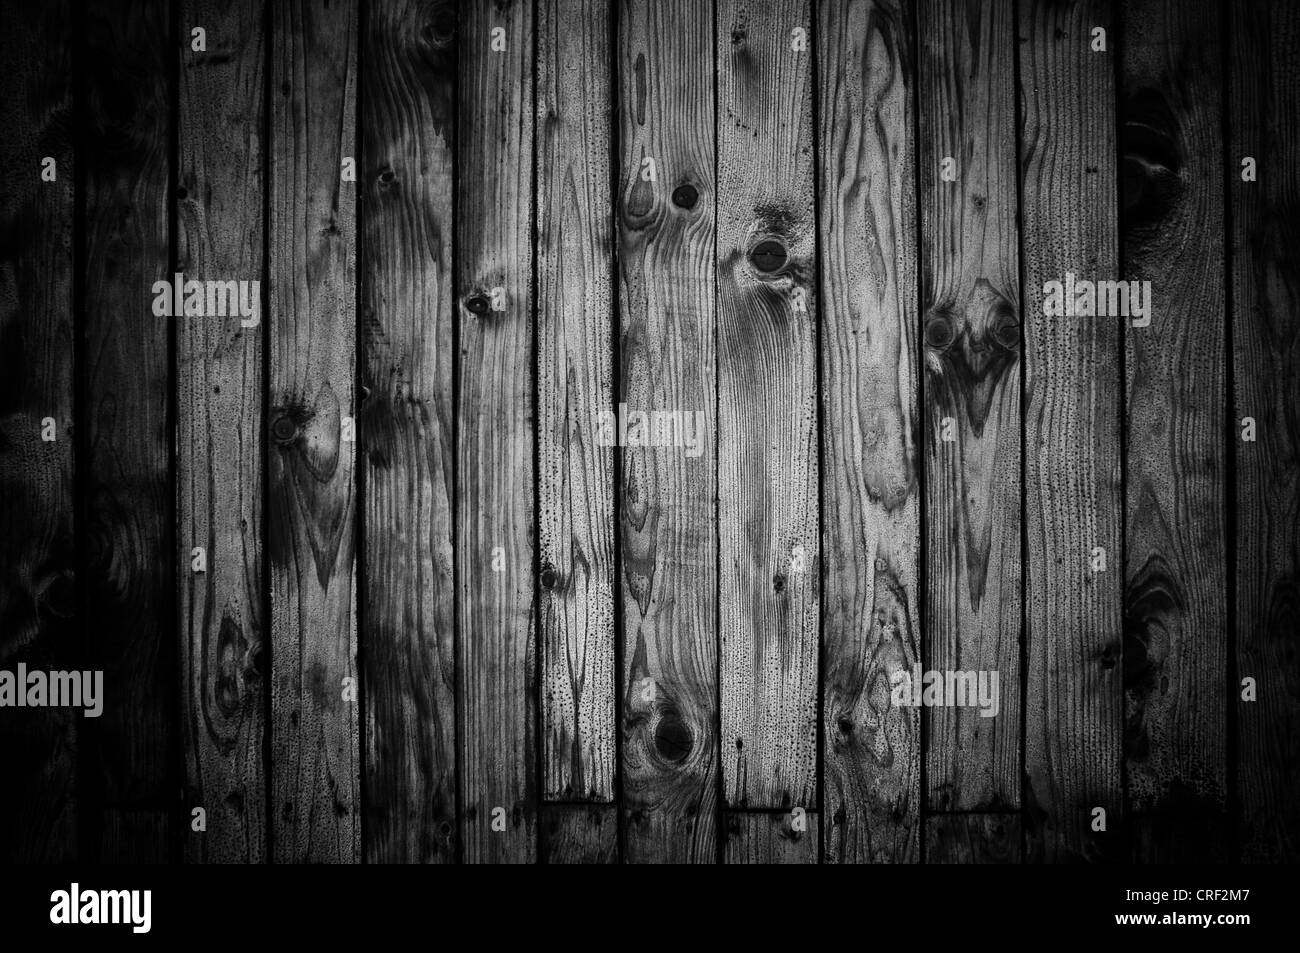 Hölzerne Struktur, alte Holzbretter. Bild als Hintergrund für Ihr Design einsetzbar. Stockfoto